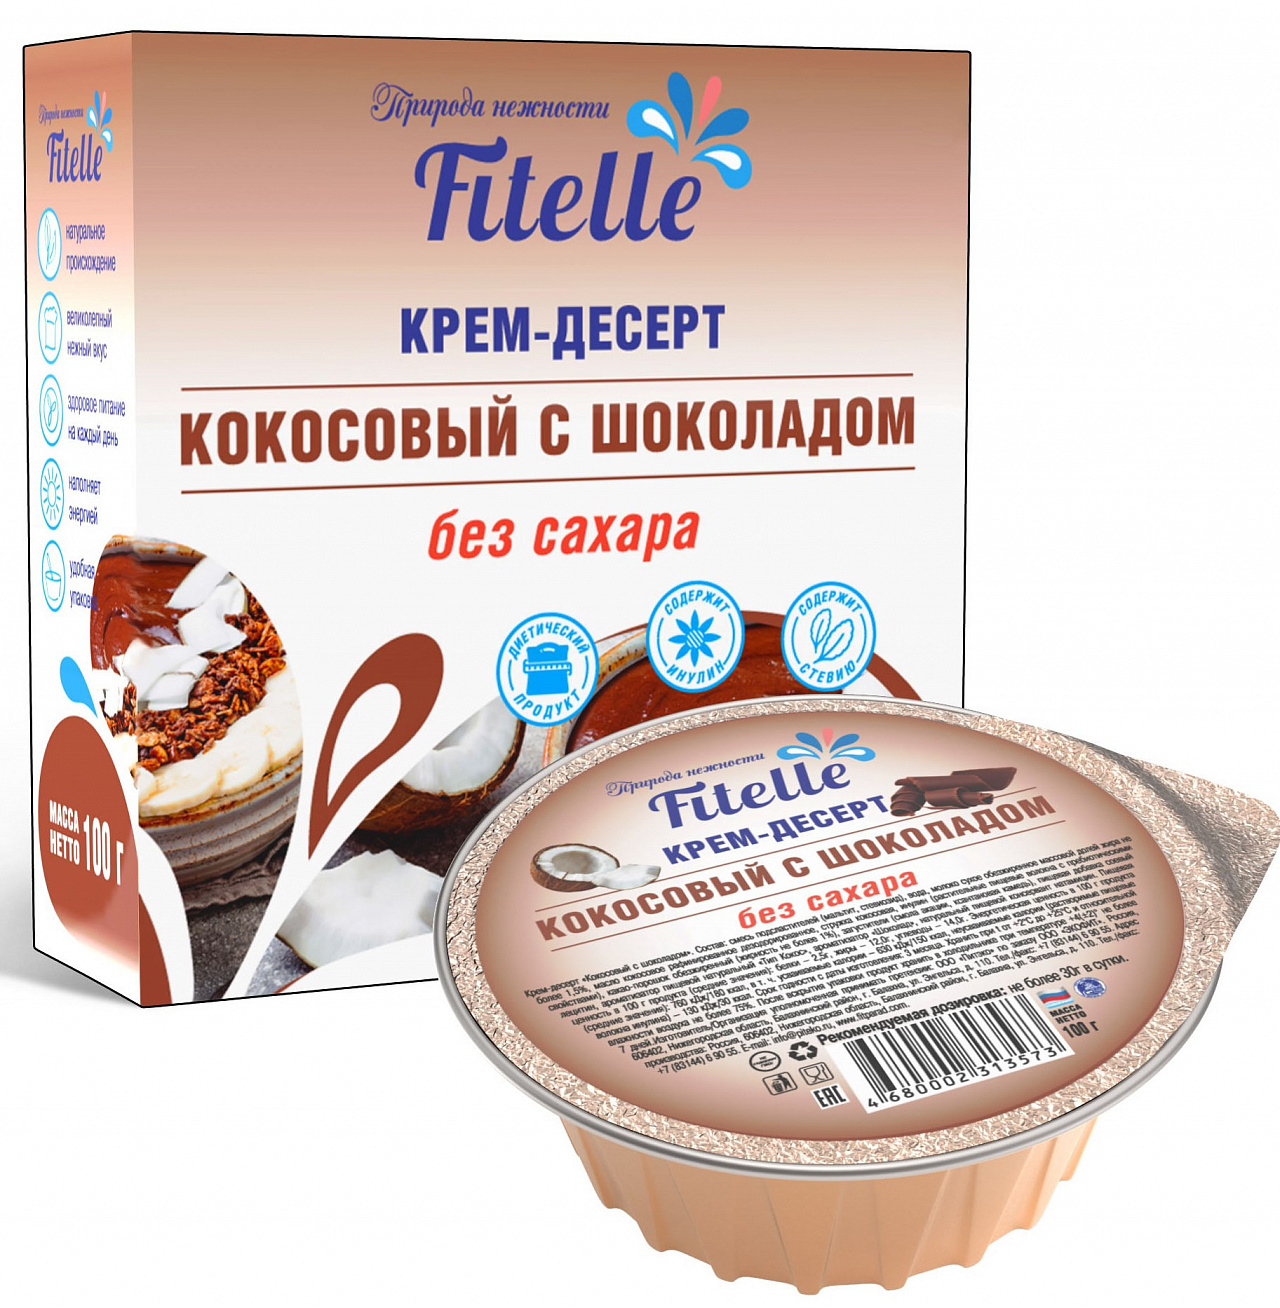 Fitelle Крем-десерт "Кокосовый с шоколадом" (100 гр.)